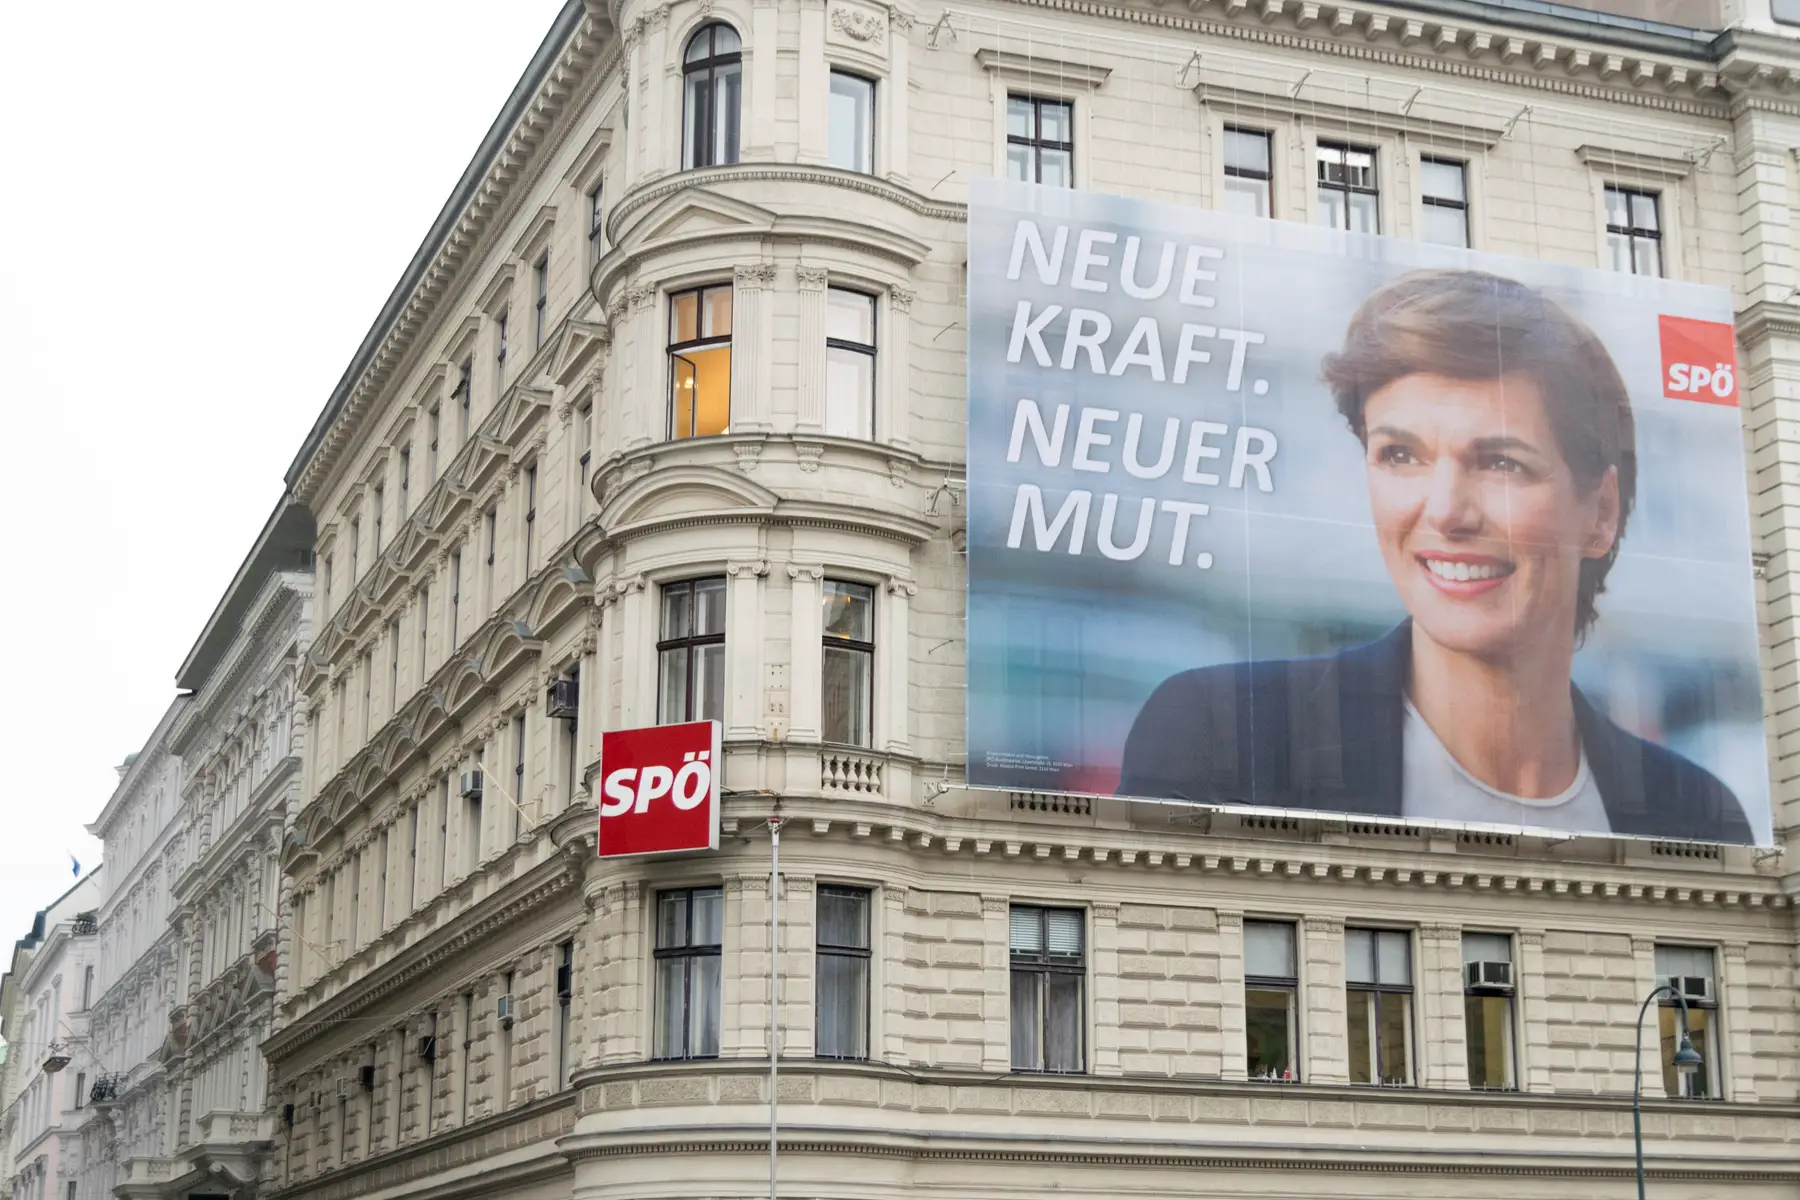 SPÖ headquarters in Vienna